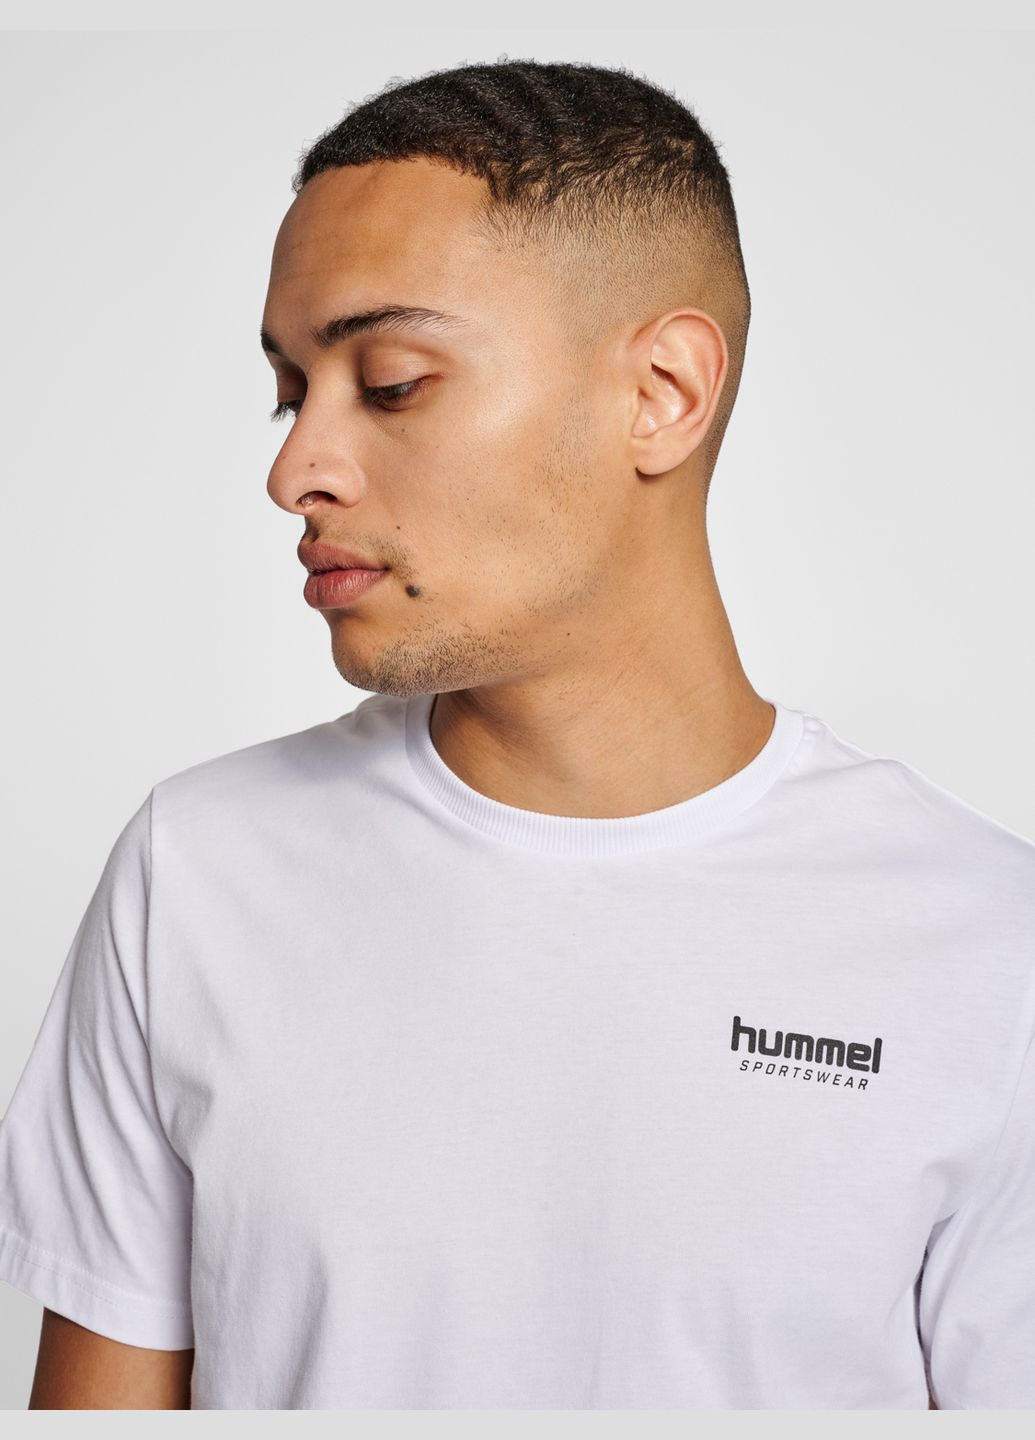 Біла футболка з логотипом для чоловіка 215588 білий Hummel